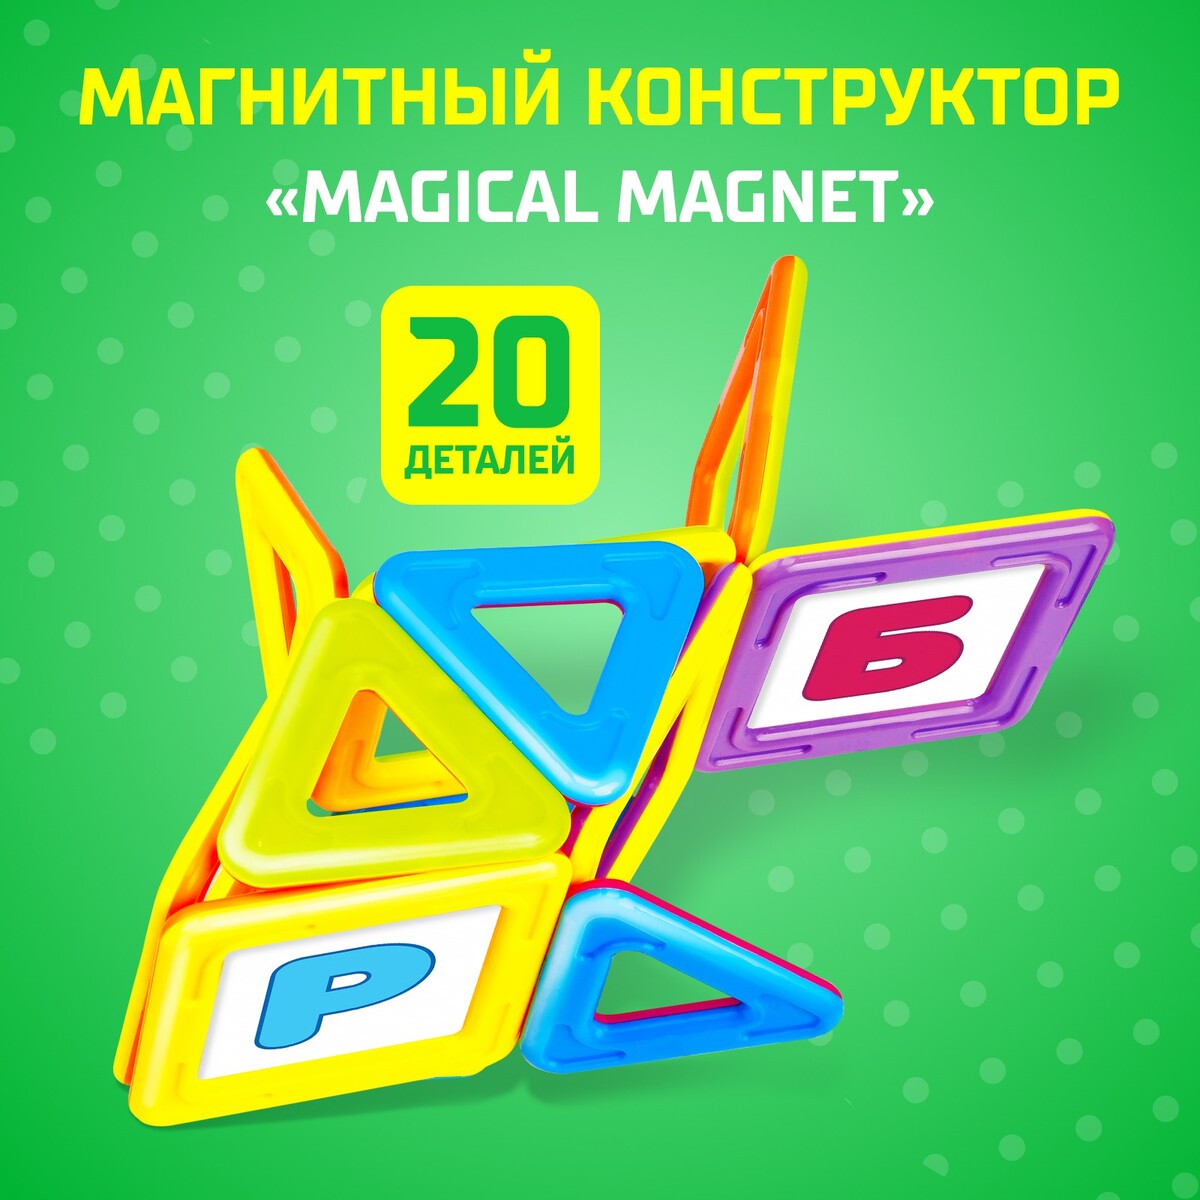 Магнитный конструктор magical magnet, 20 деталей, детали матовые магнитный конструктор magical magnet 61 деталь unicon